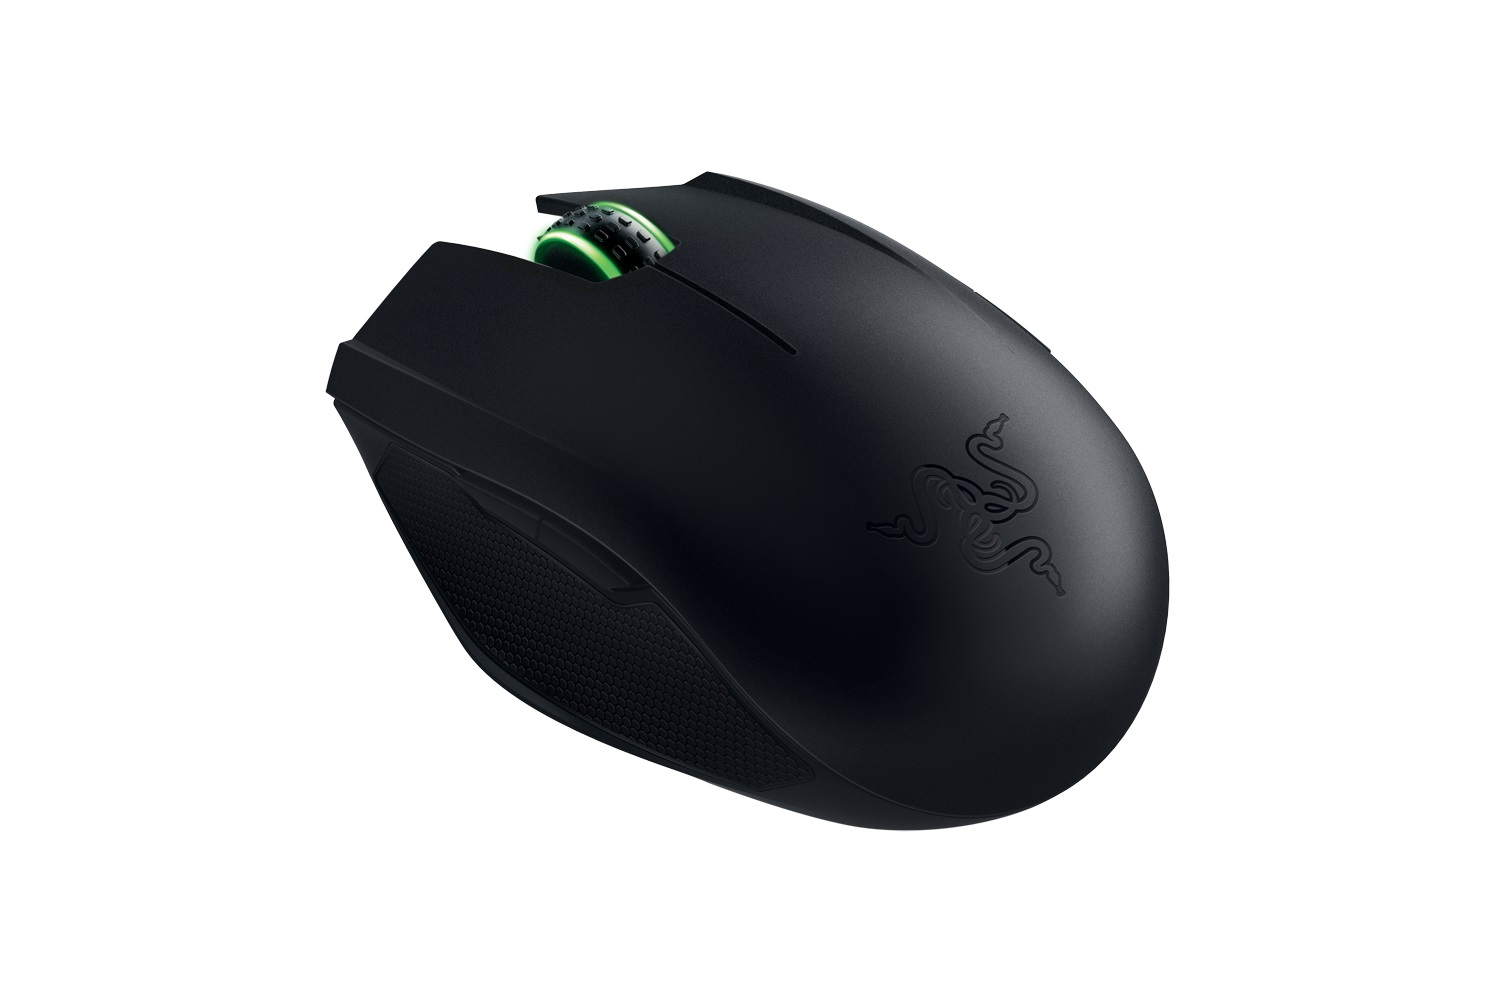 Razer Announces Orochi 2015 Gaming Mouse